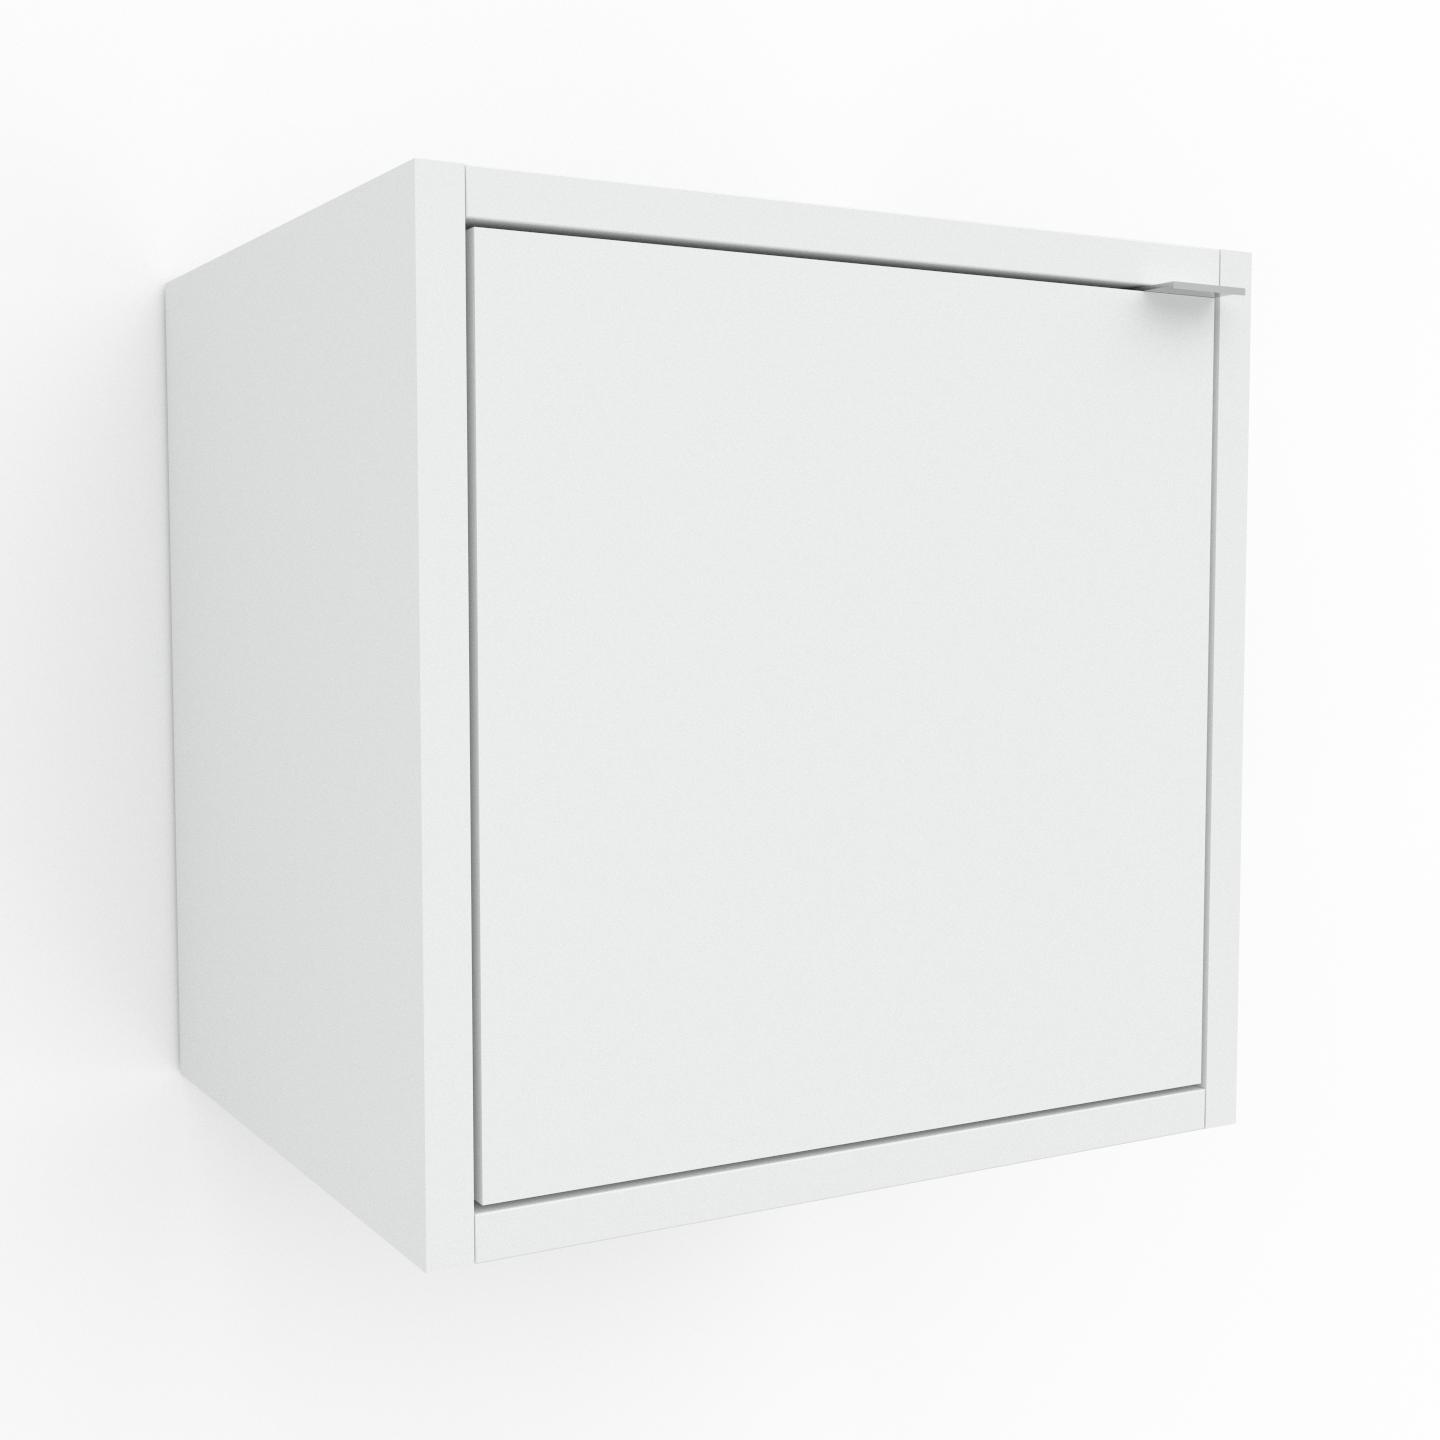 MYCS Hängeschrank Weiß - Moderner Wandschrank: Türen in Weiß - 41 x 41 x 35 cm, konfigurierbar